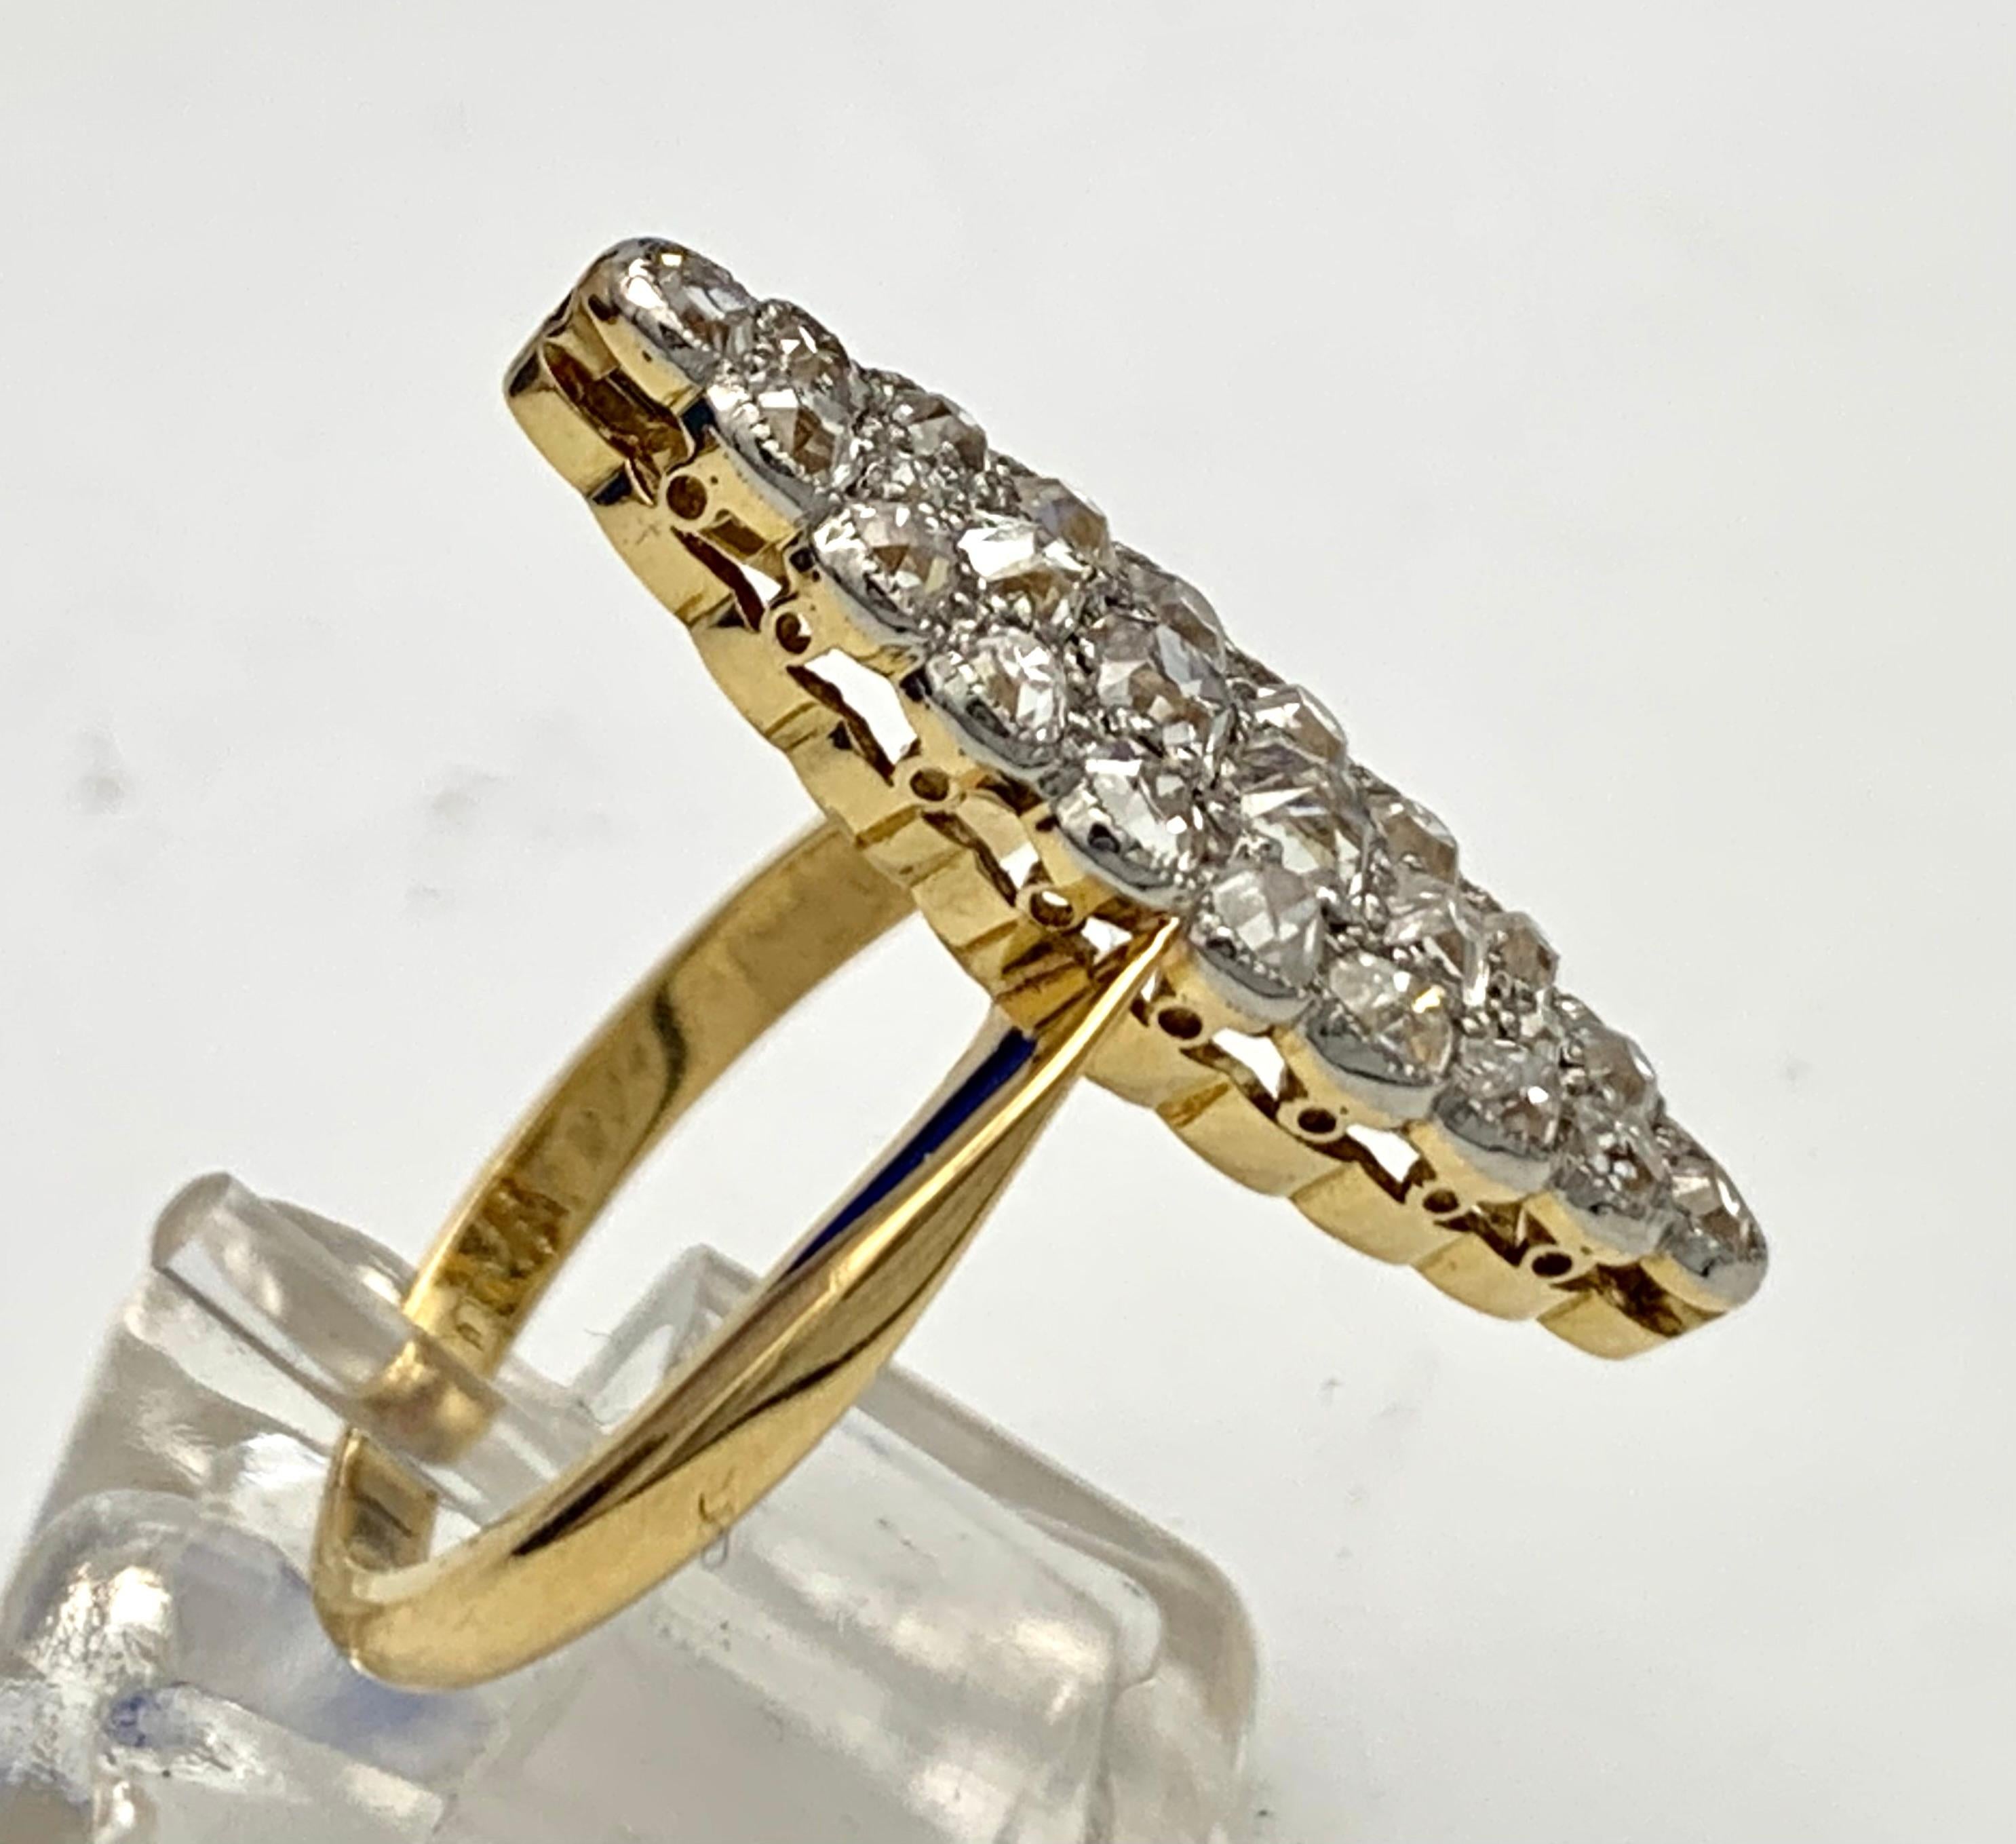 La forme de la tête de l'anneau est conçue comme un ovale pointu aux bords ondulés. Vingt-quatre diamants ronds sont montés sur une monture en platine à mille grains. La partie supérieure en platine est  monté sur un anneau en or 18 carats.
La bague